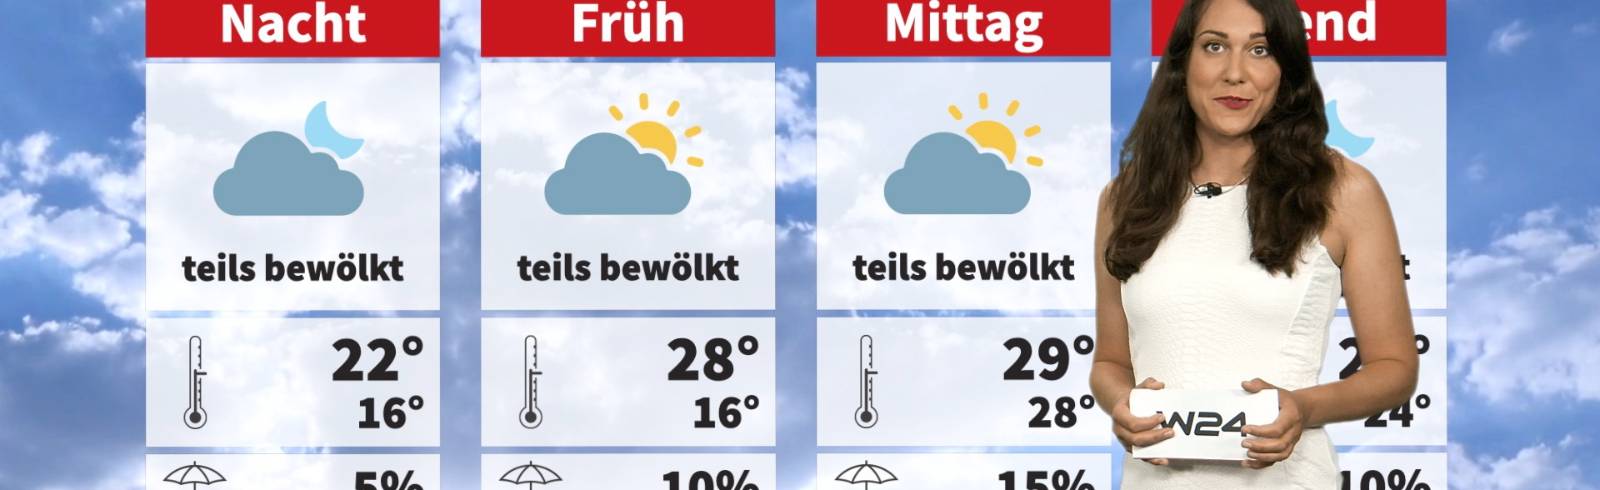 24 Stunden Wien Wetter: Wieder wärmer